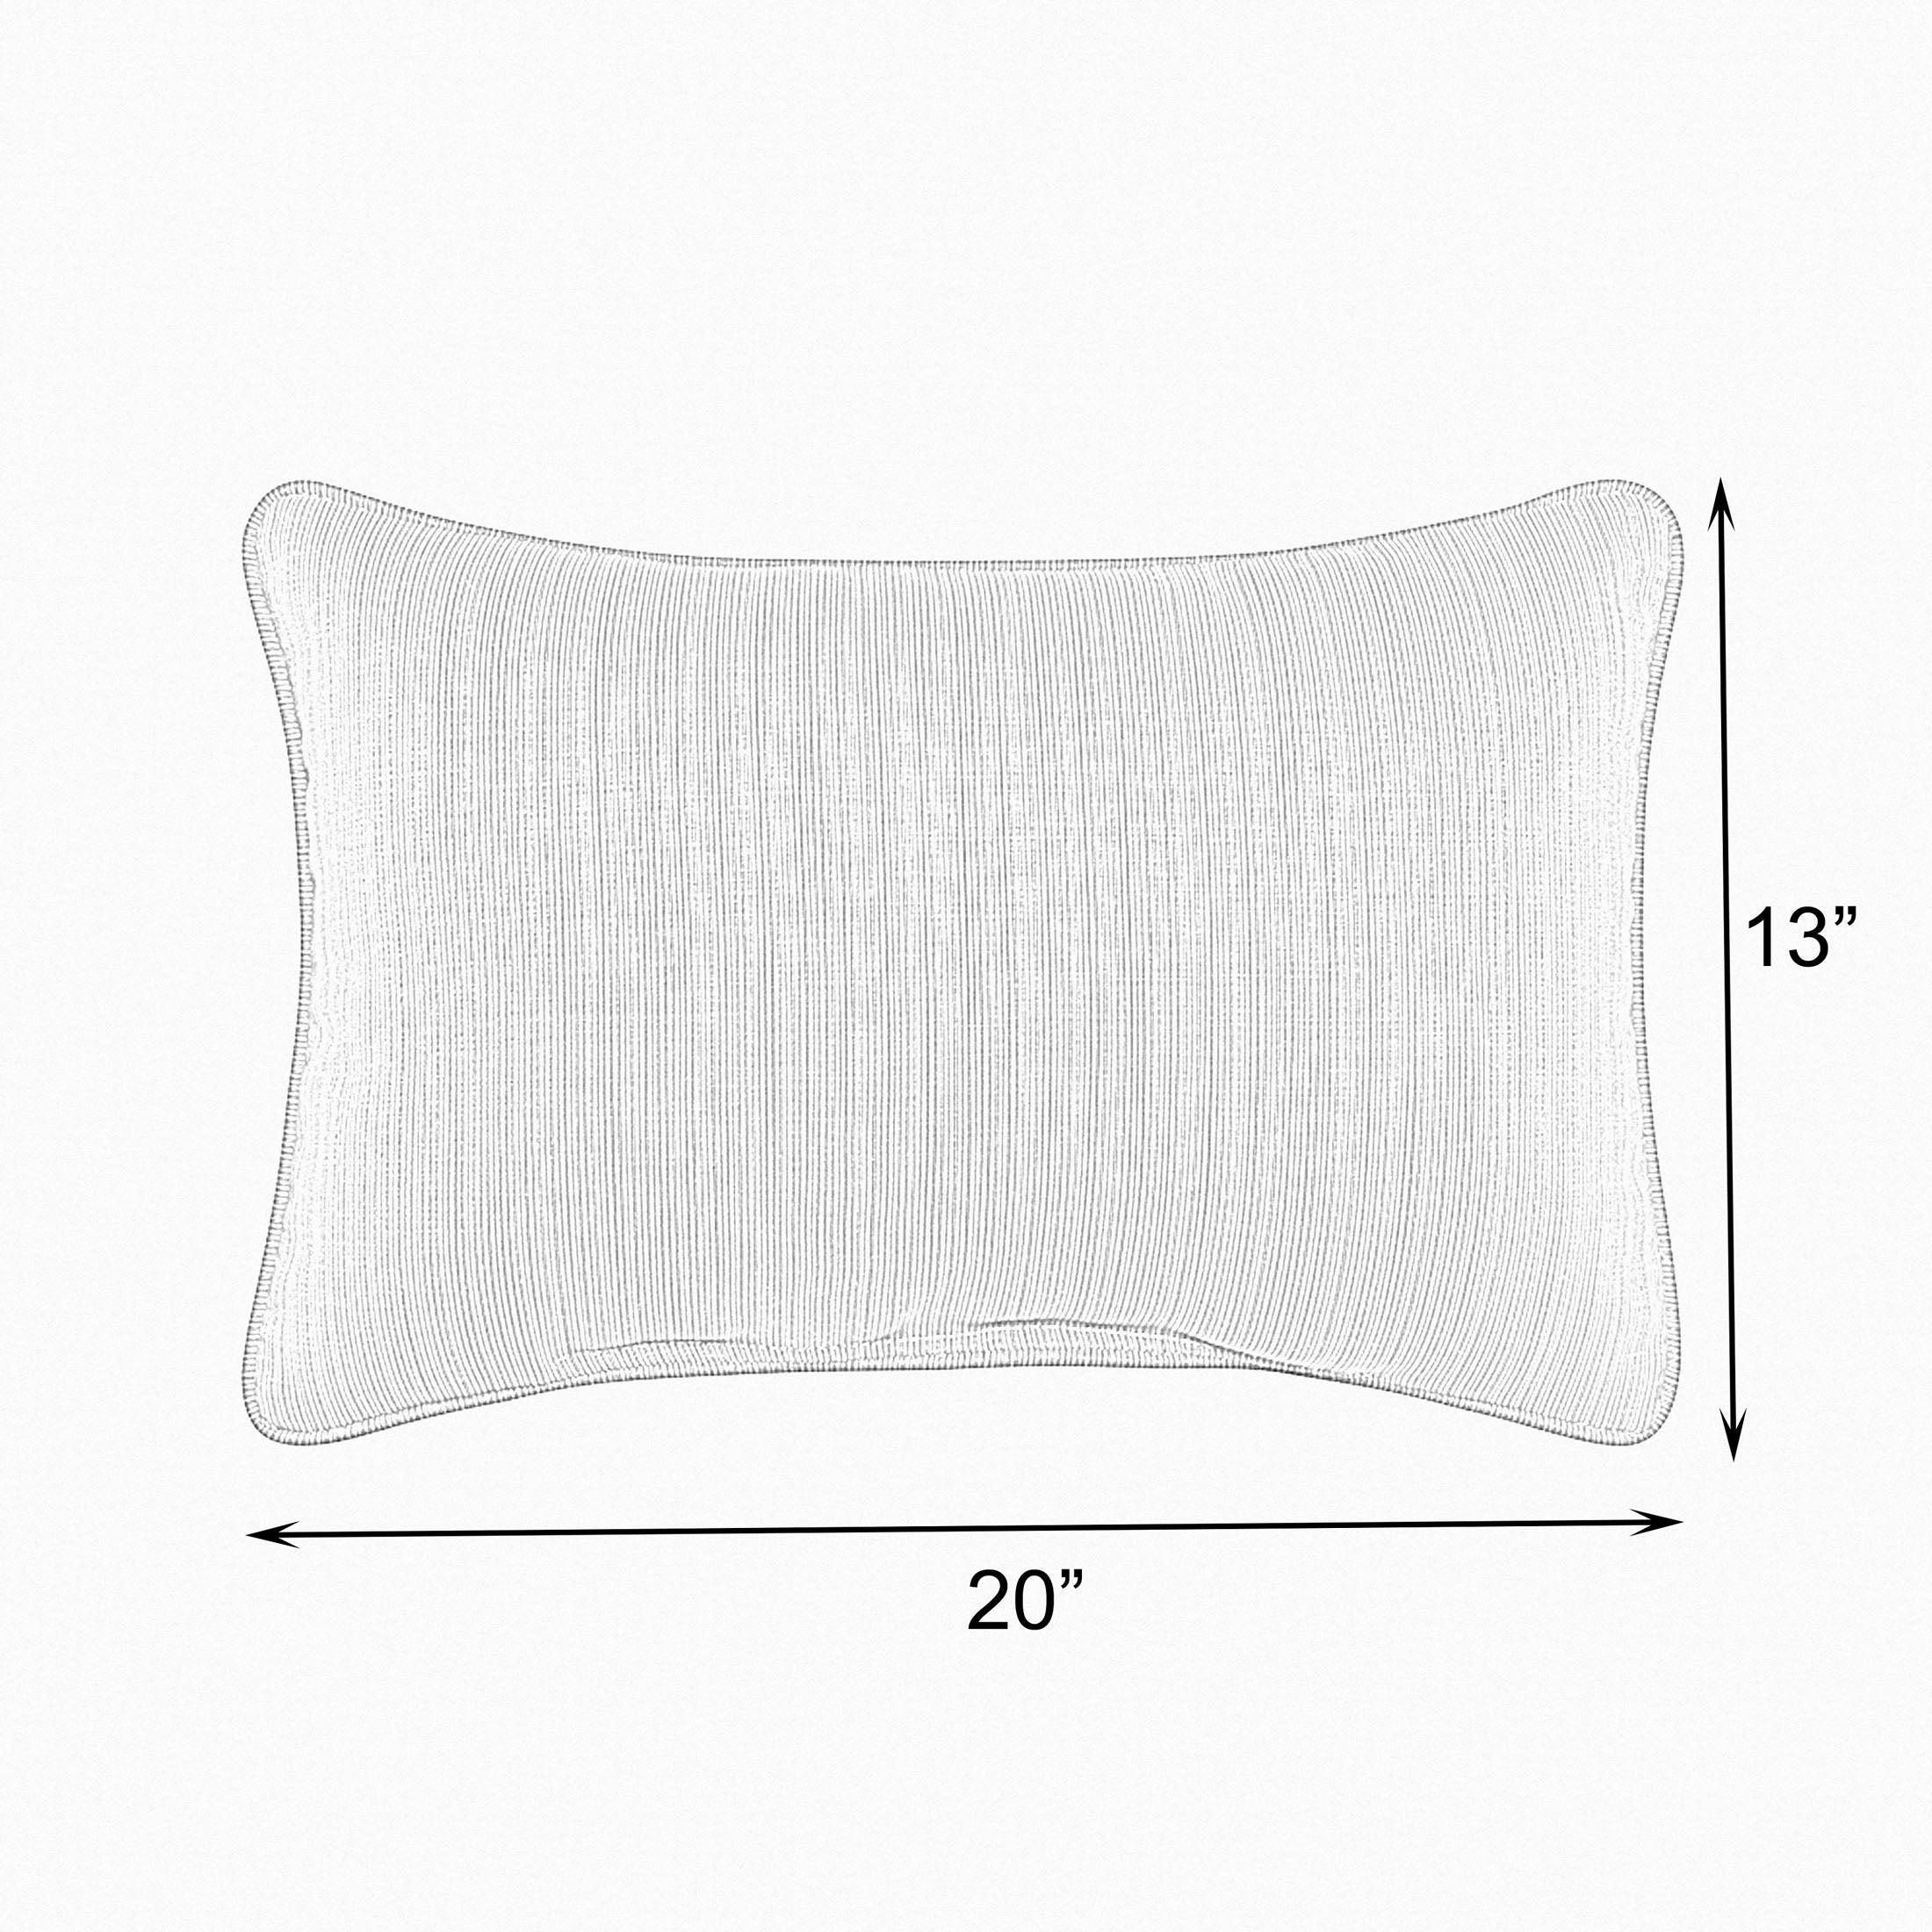 Sunbrella Cabana Lumbar Pillow (Set of 2) - Sorra Home